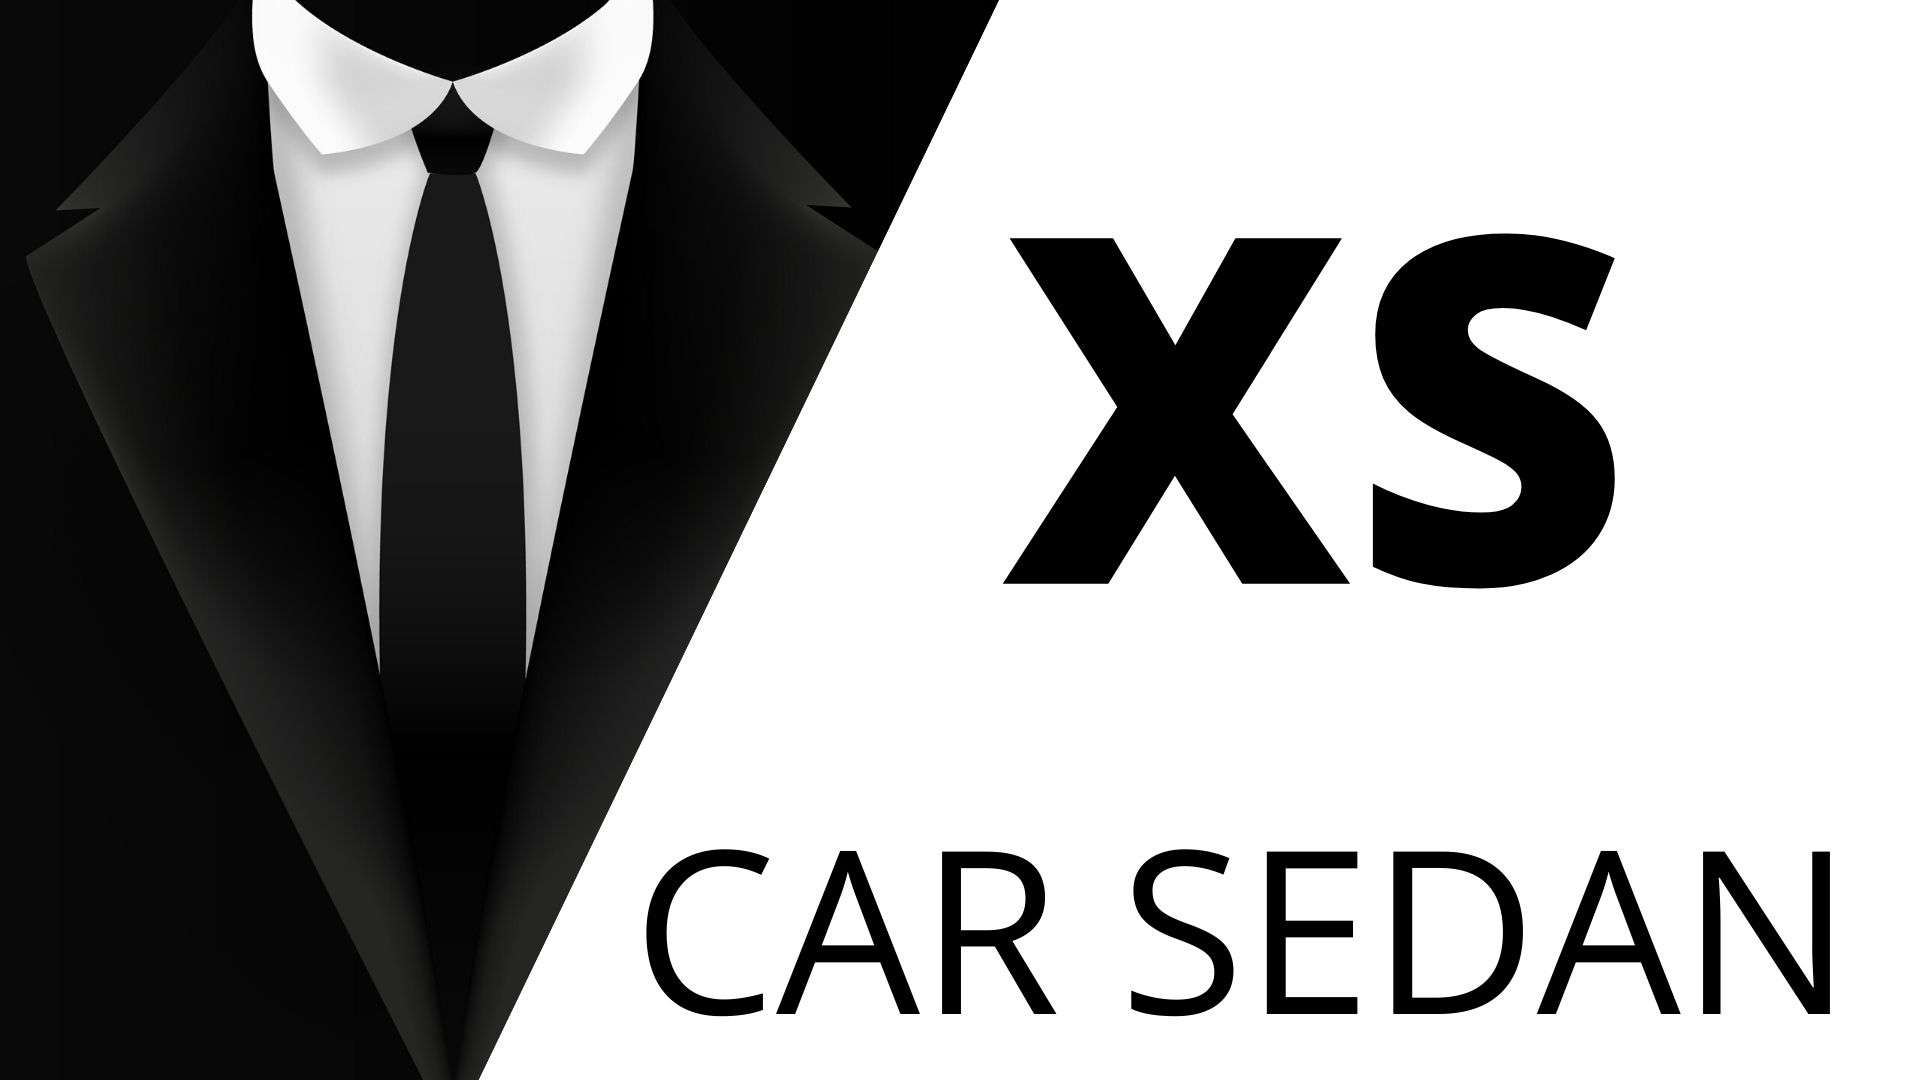 xs car sedan 3 days on demand chauffeur